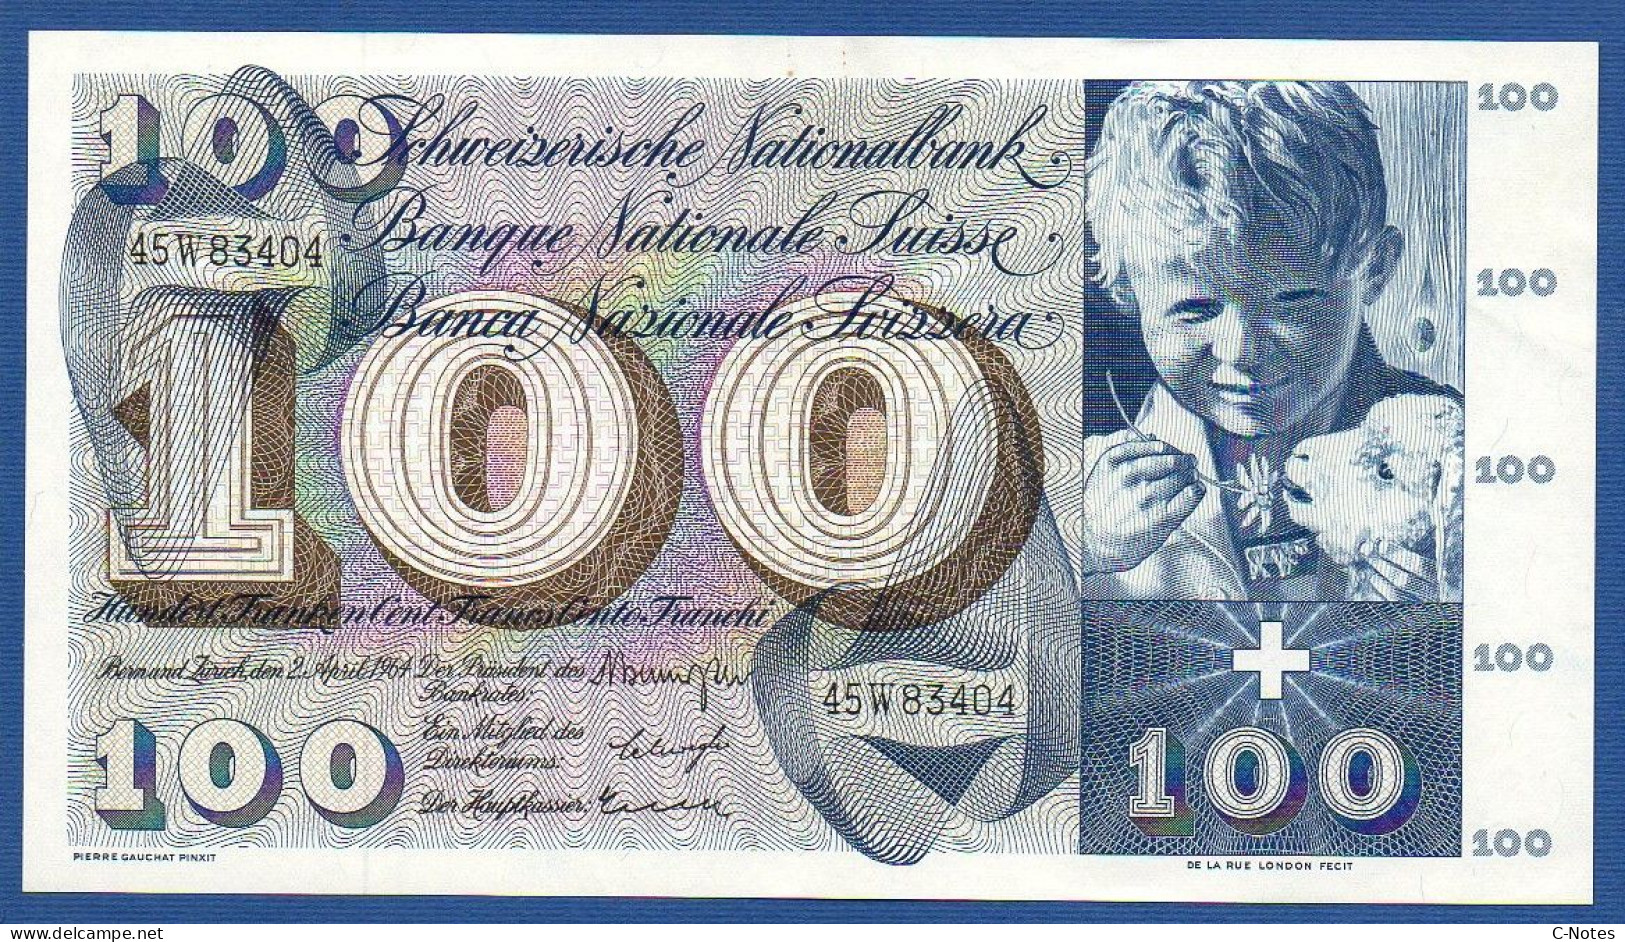 SWITZERLAND - P.49f(1) - 100 Francs 1964 AUNC, Serie 45W83404  -signatures: Brenno Galli / Schwegler / Kunz - Schweiz